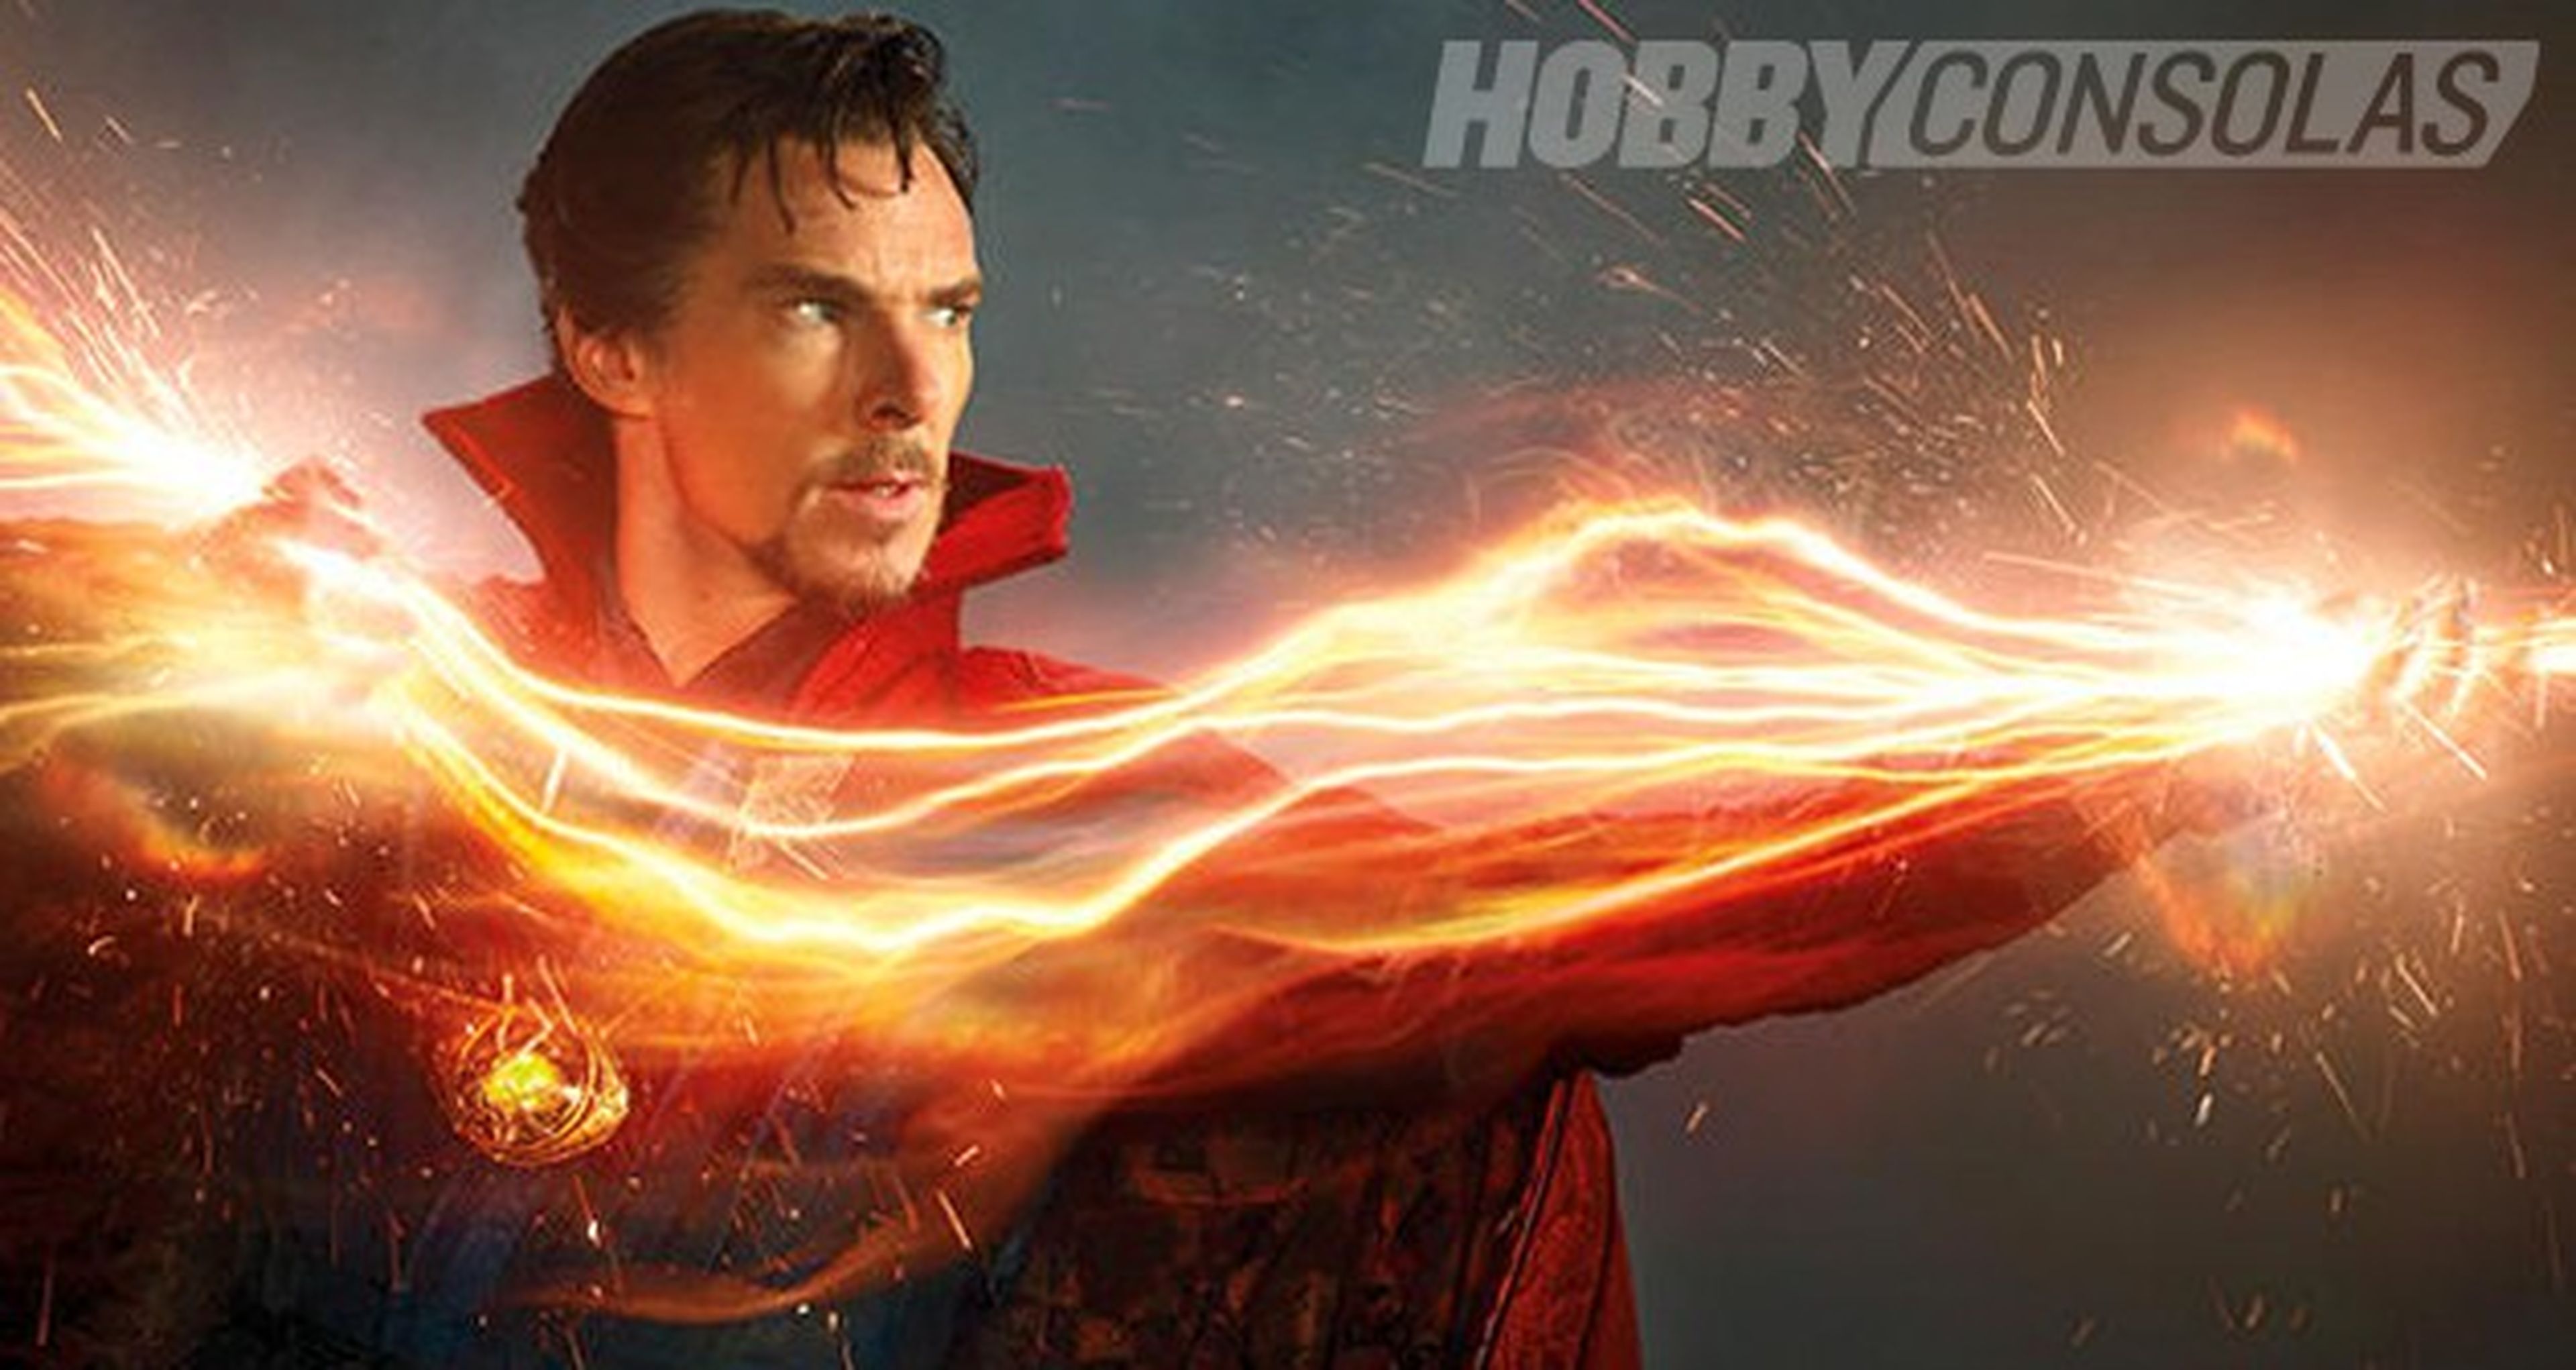 Doctor Extraño – Sinopsis oficial de la película protagonizada por Benedict Cumberbatch